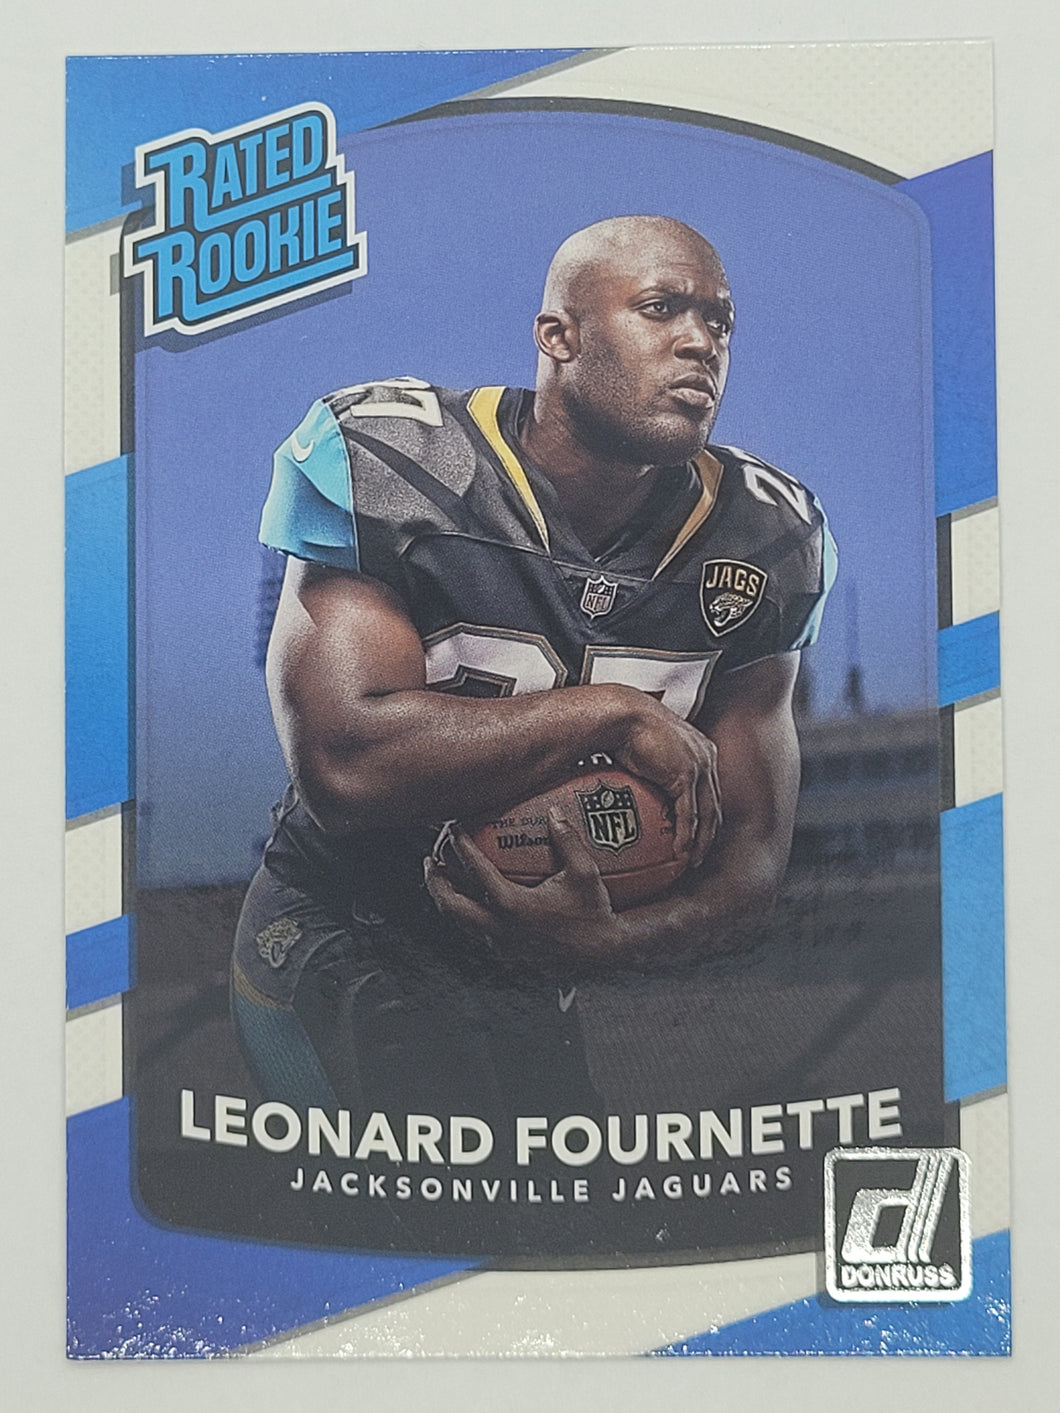 2017 Donruss Rated Rookie Leonard Fournette Rookie F0otball Card